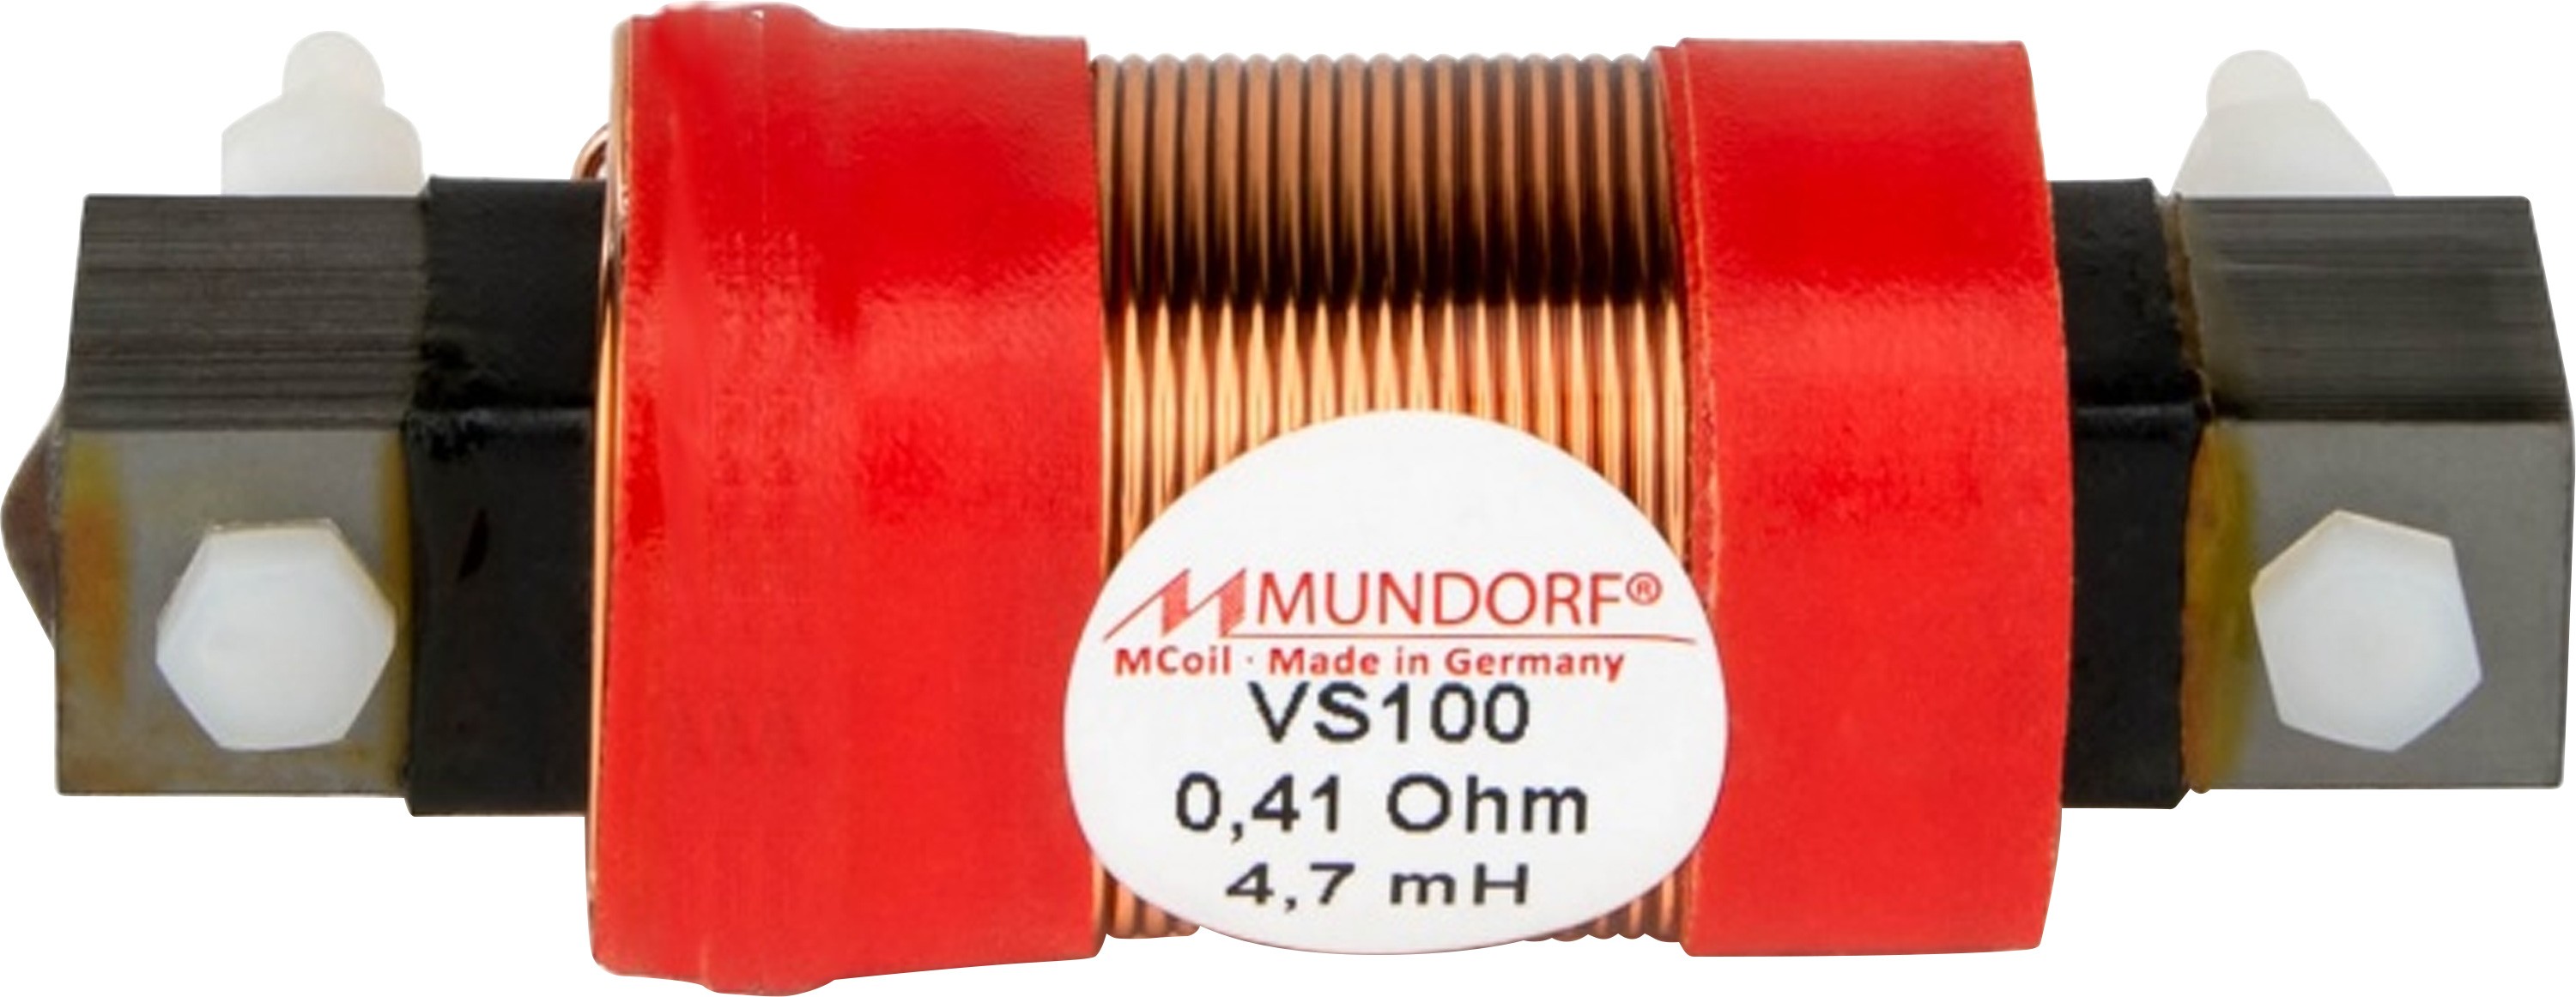 MUNDORF VS100-12 MCOIL ICORE Copper Coil Feron Core 12mH